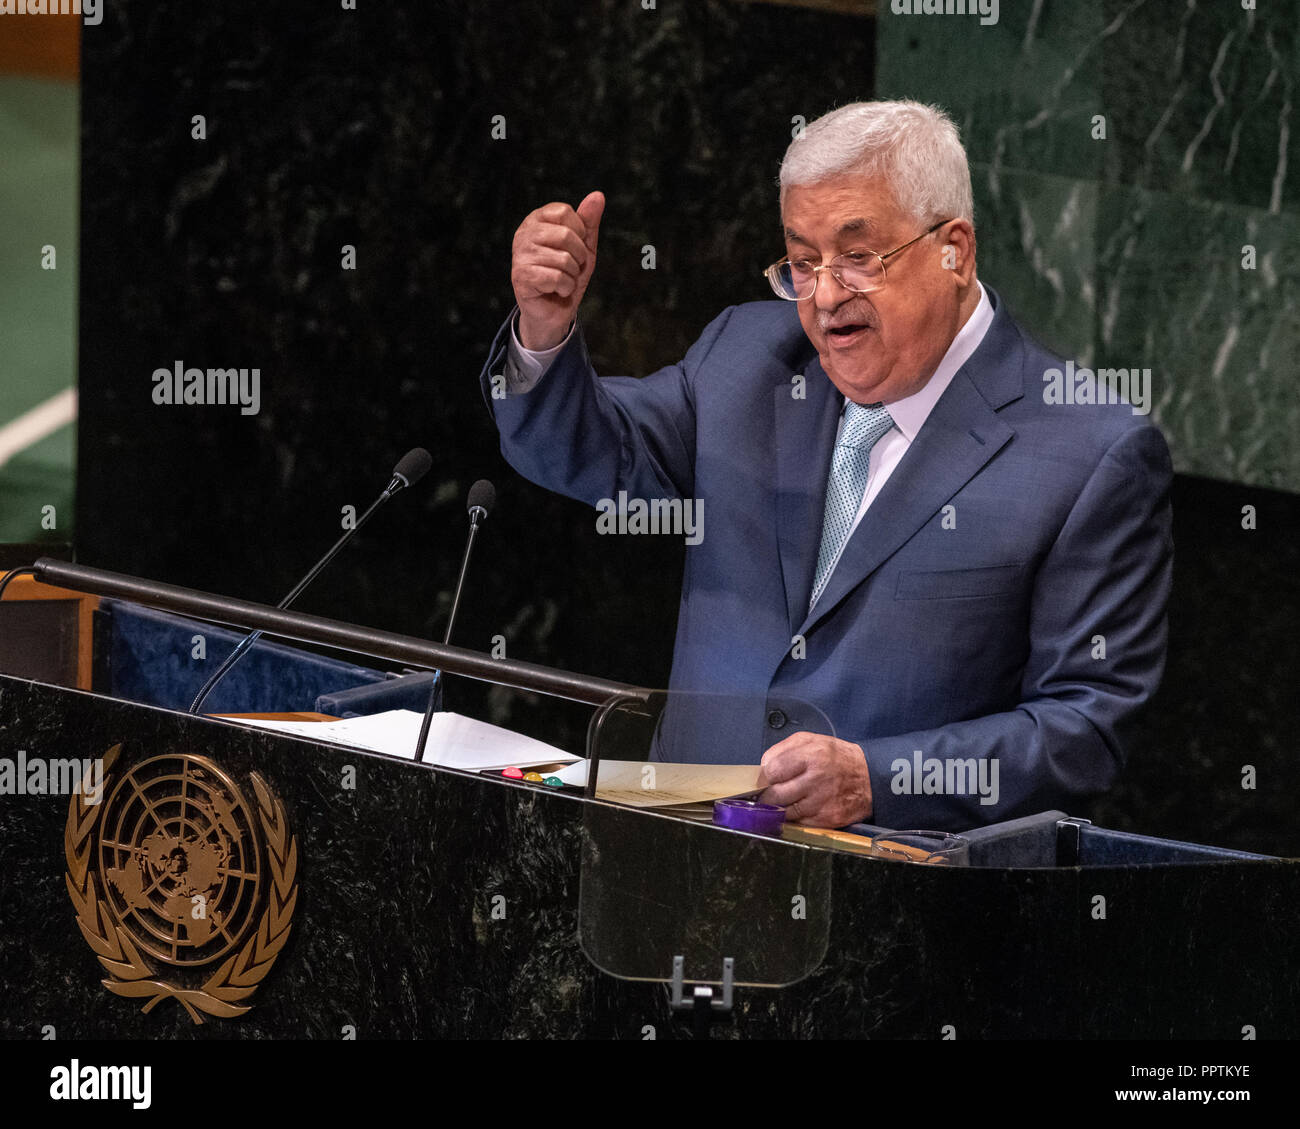 New York, Stati Uniti d'America, 27 settembre 2018. Mahmoud Abbas, Presidente dello Stato di Palestina, indirizzi alla 73a Assemblea generale delle Nazioni Unite presso la sede delle Nazioni Unite a New York City. Foto di Enrique Shore Credit: Enrique Shore/Alamy Live News Foto Stock